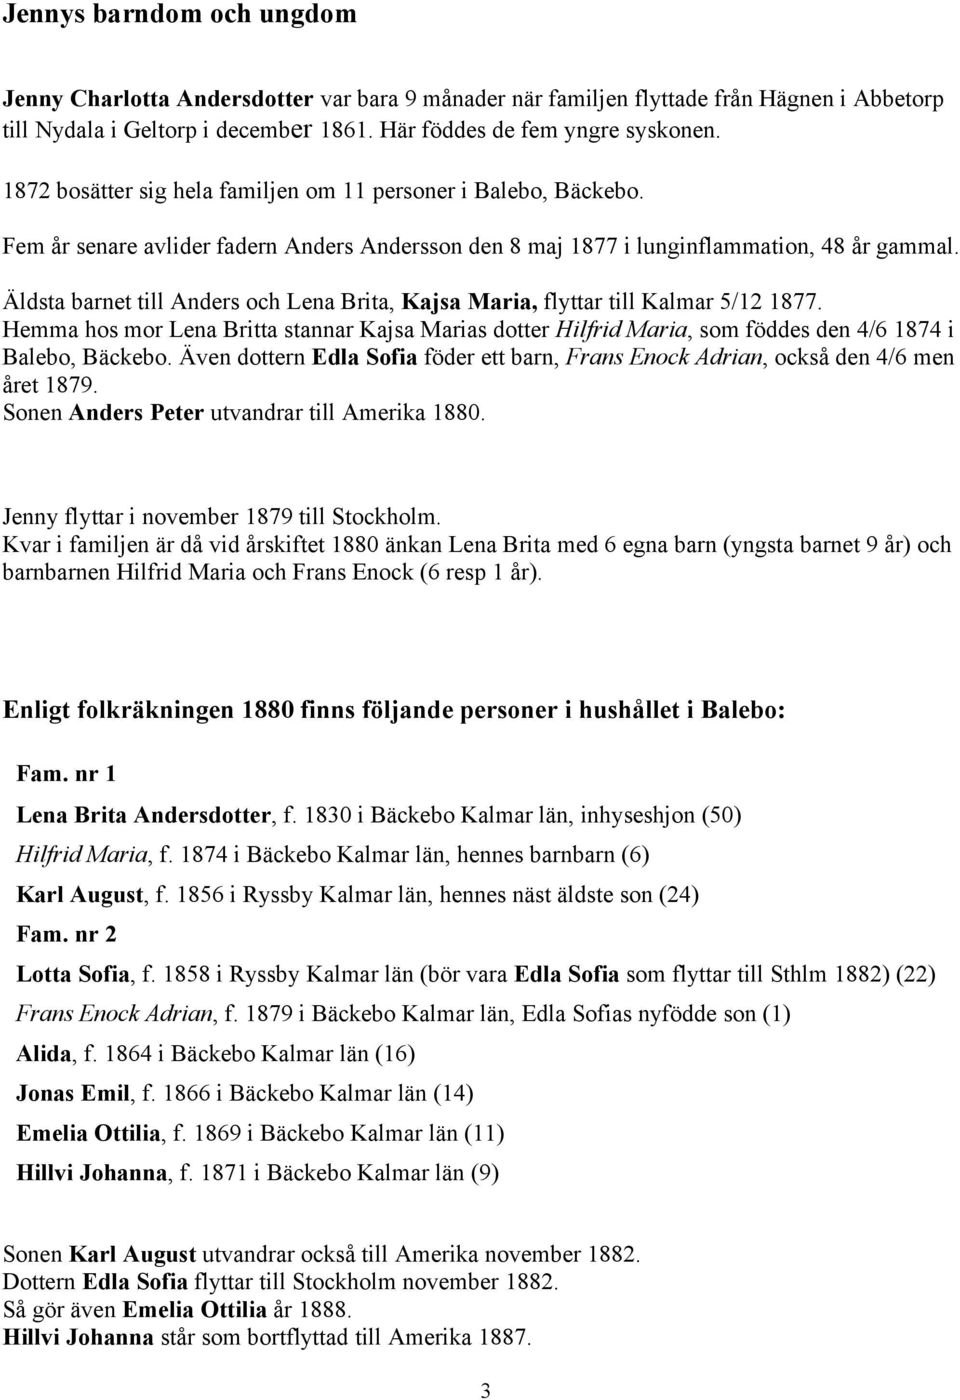 Äldsta barnet till Anders och Lena Brita, Kajsa Maria, flyttar till Kalmar 5/12 1877. Hemma hos mor Lena Britta stannar Kajsa Marias dotter Hilfrid Maria, som föddes den 4/6 1874 i Balebo, Bäckebo.